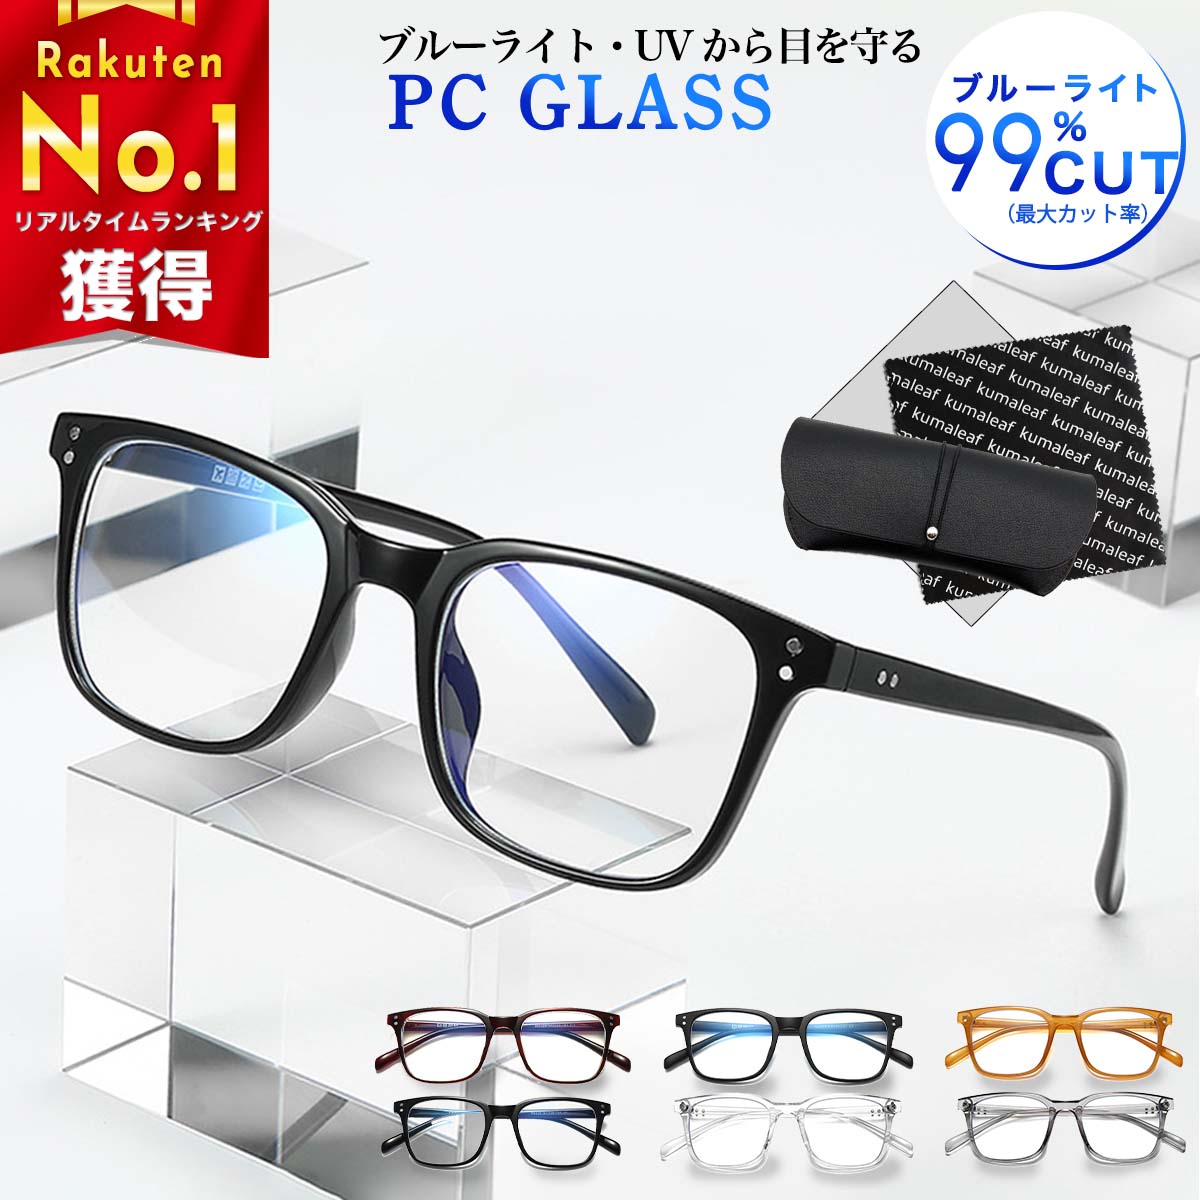 ブルーカットメガネ ブルーライトカット率最大99% 眼鏡 ブルーカット パソコンメガネ めがね TR素材 紫外線カット 在宅ワーク 在宅勤務